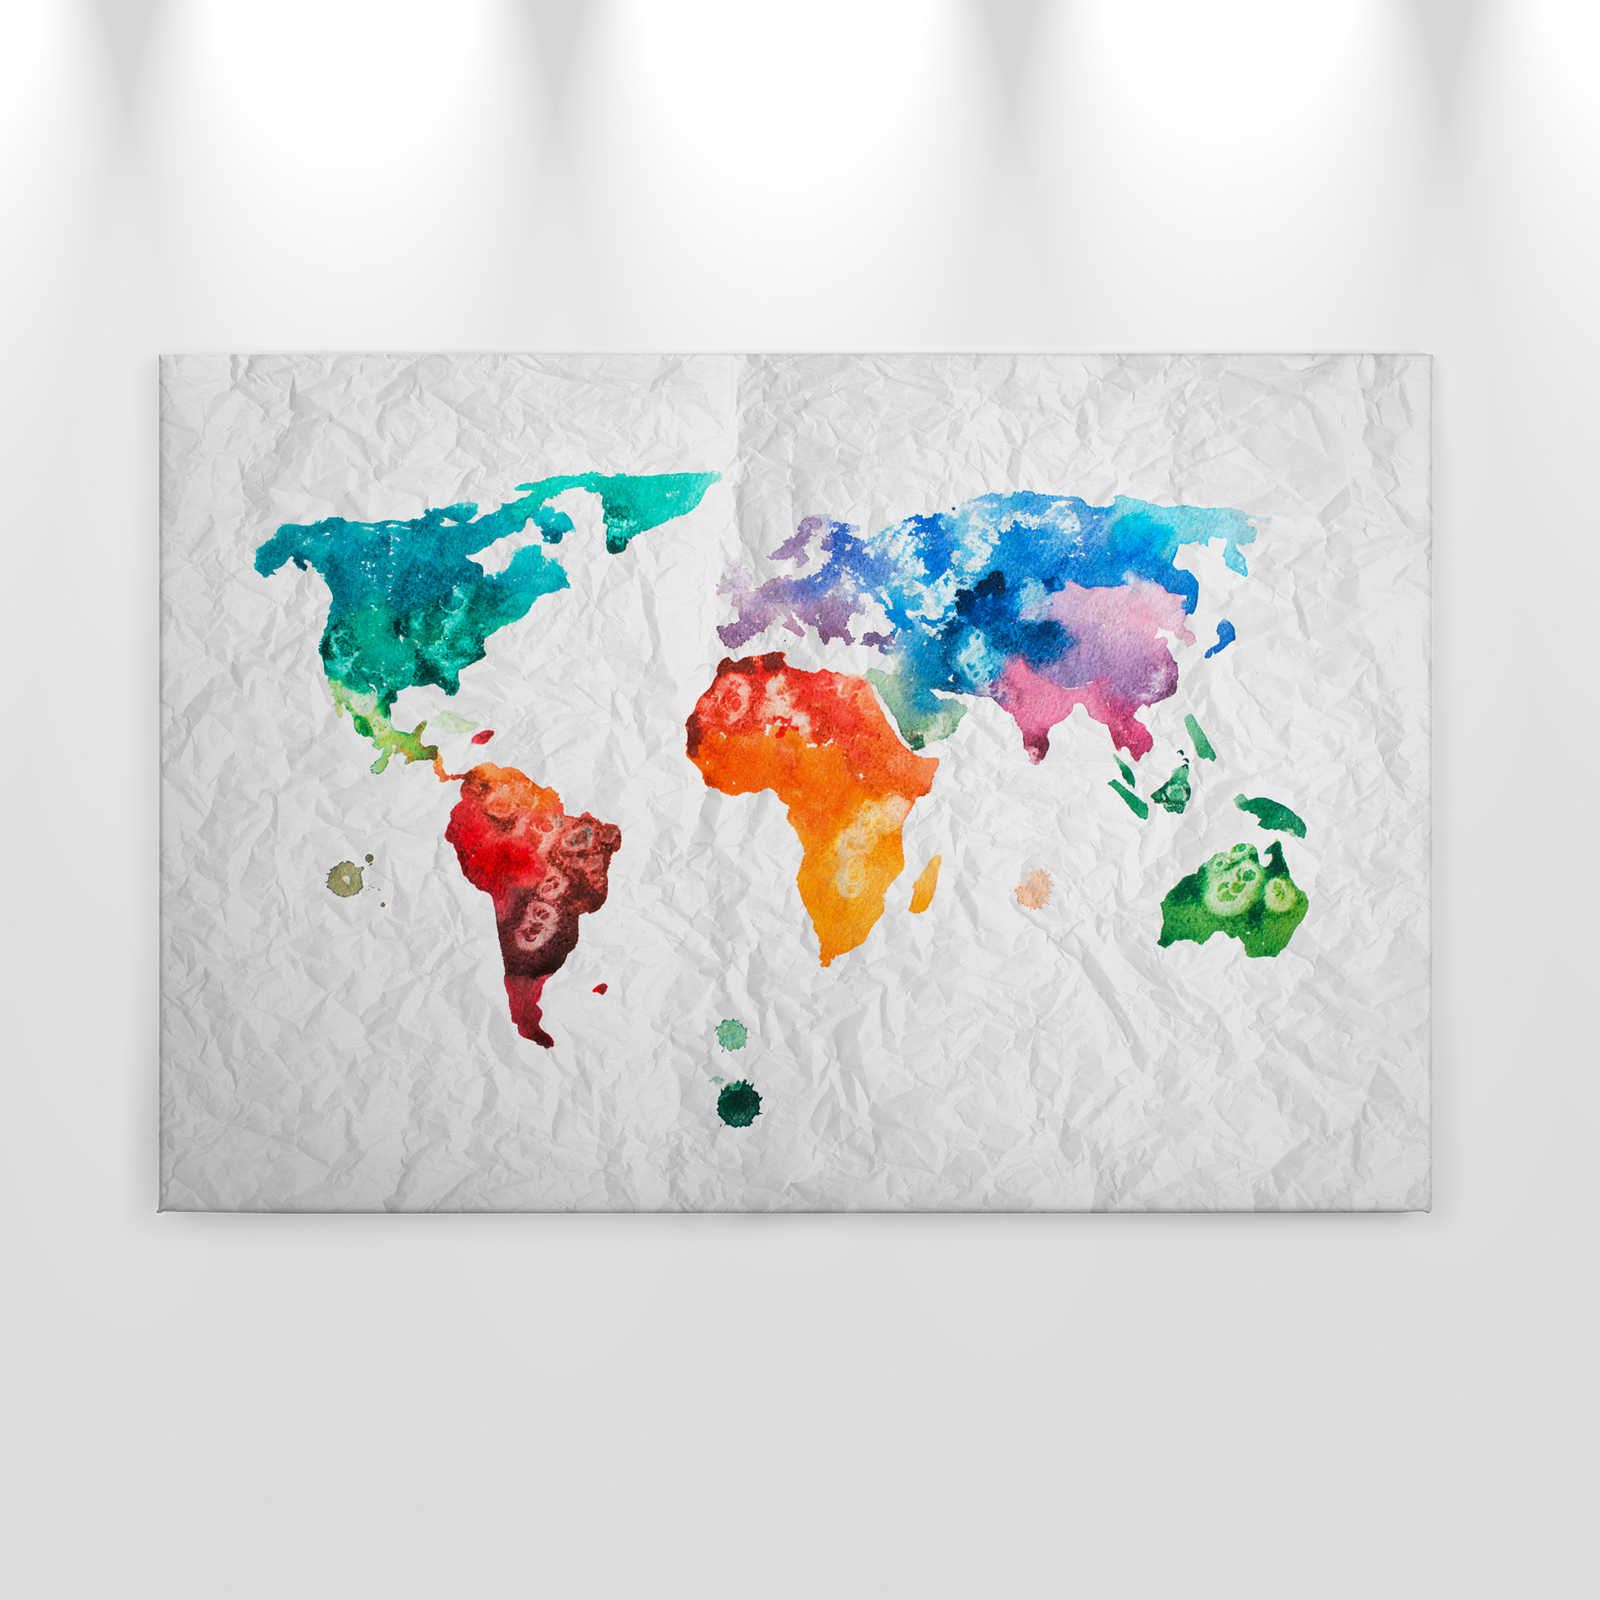             Carte du monde toile aquarelle - 0,90 m x 0,60 m
        